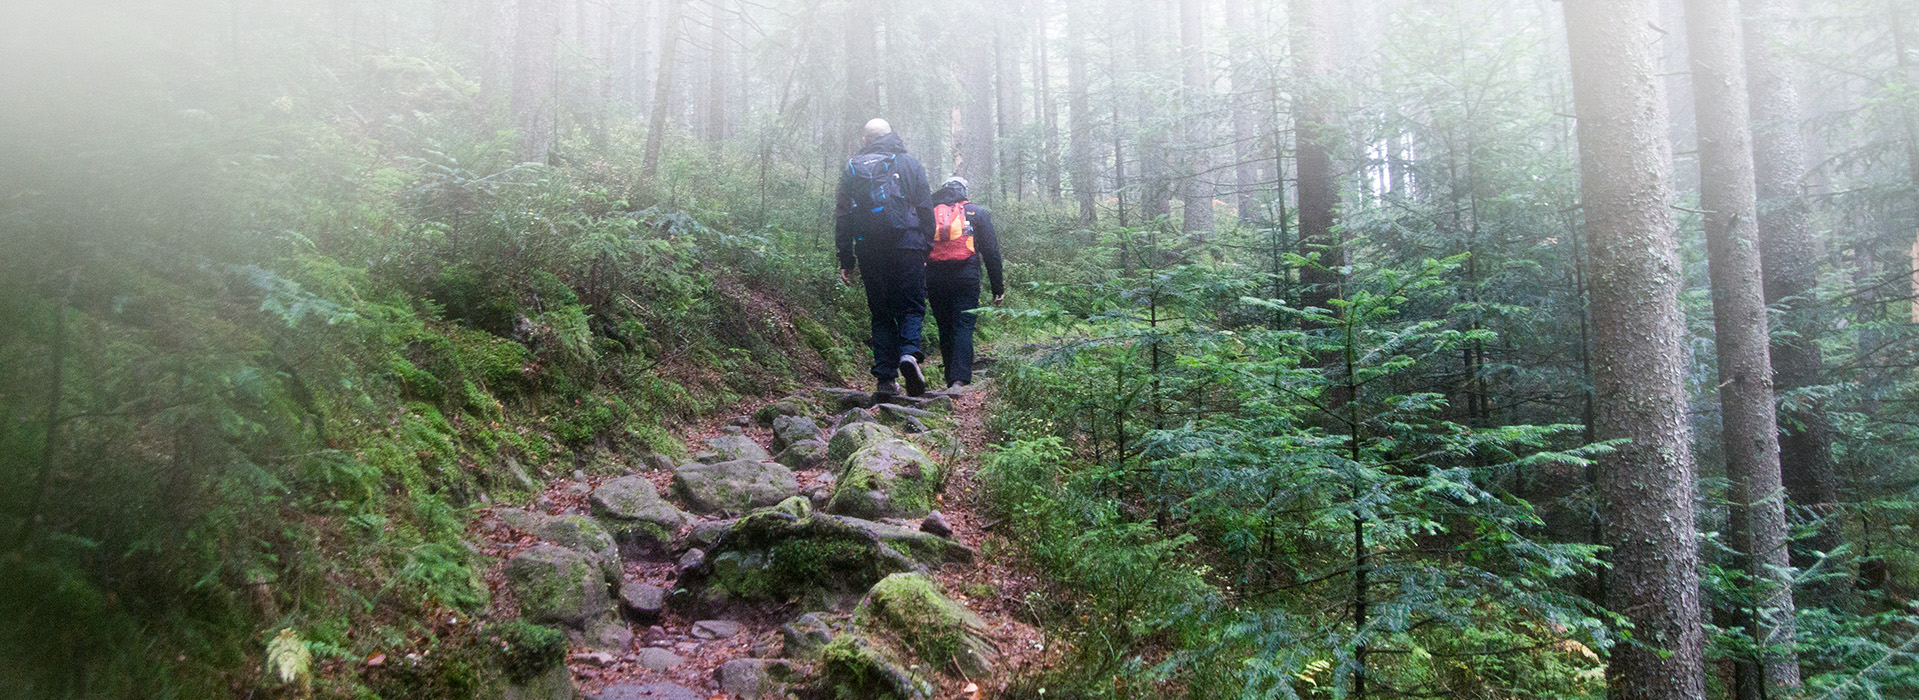 Zwei Wanderer laufen einen Wanderweg entlang. Der Weg wird von dicken Steinen gebildet. Er führt durch einen Fichtenwald.